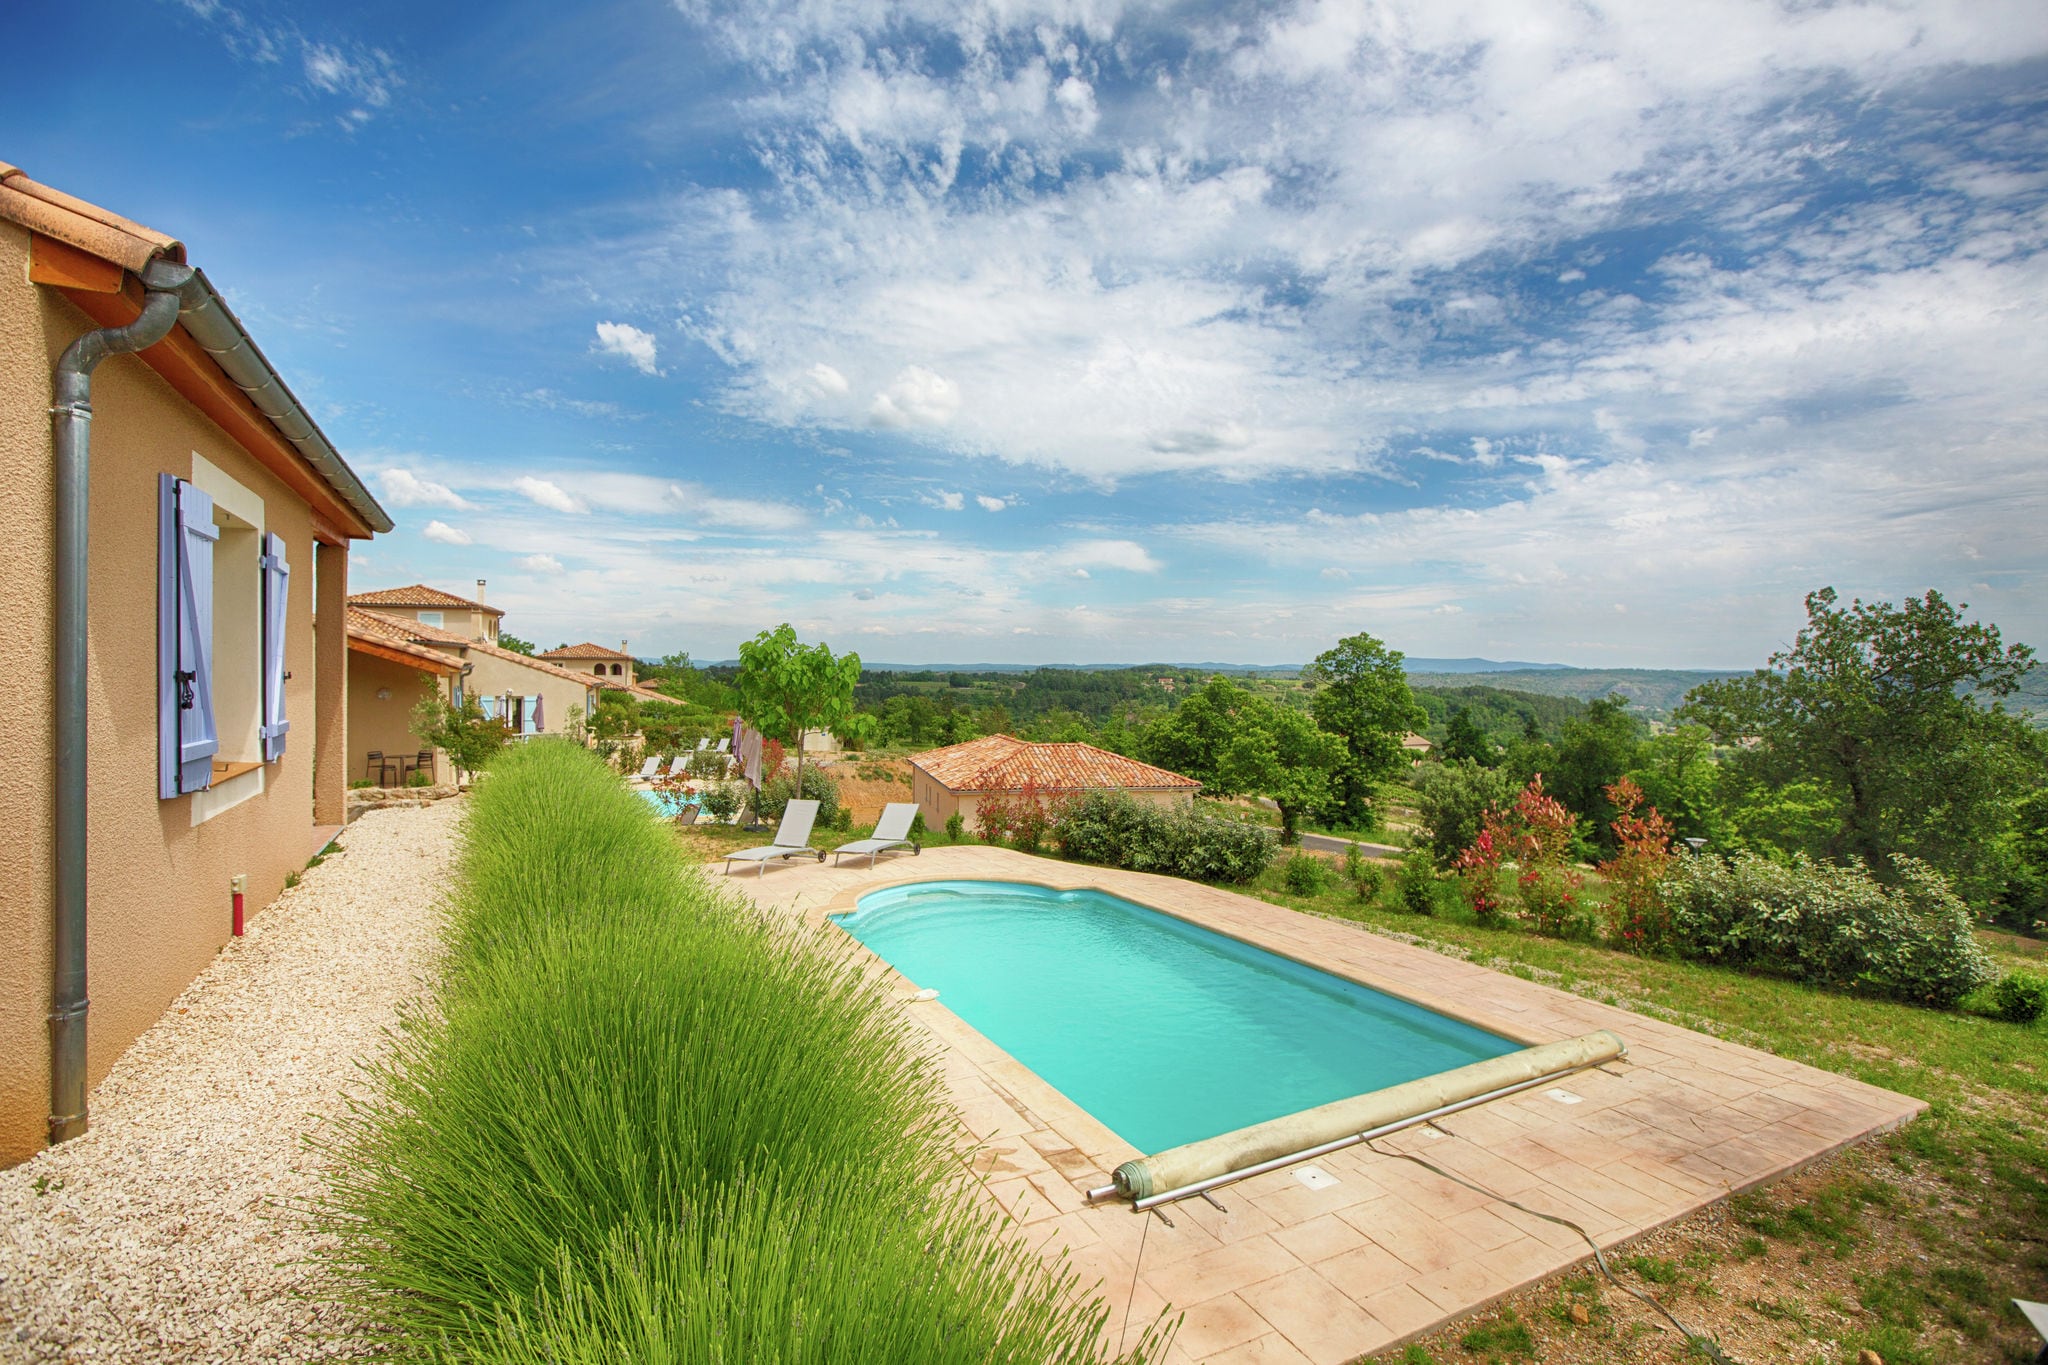 Hübsche Ferienwohnung in Joyeuse, Südfrankreich mit Terrasse